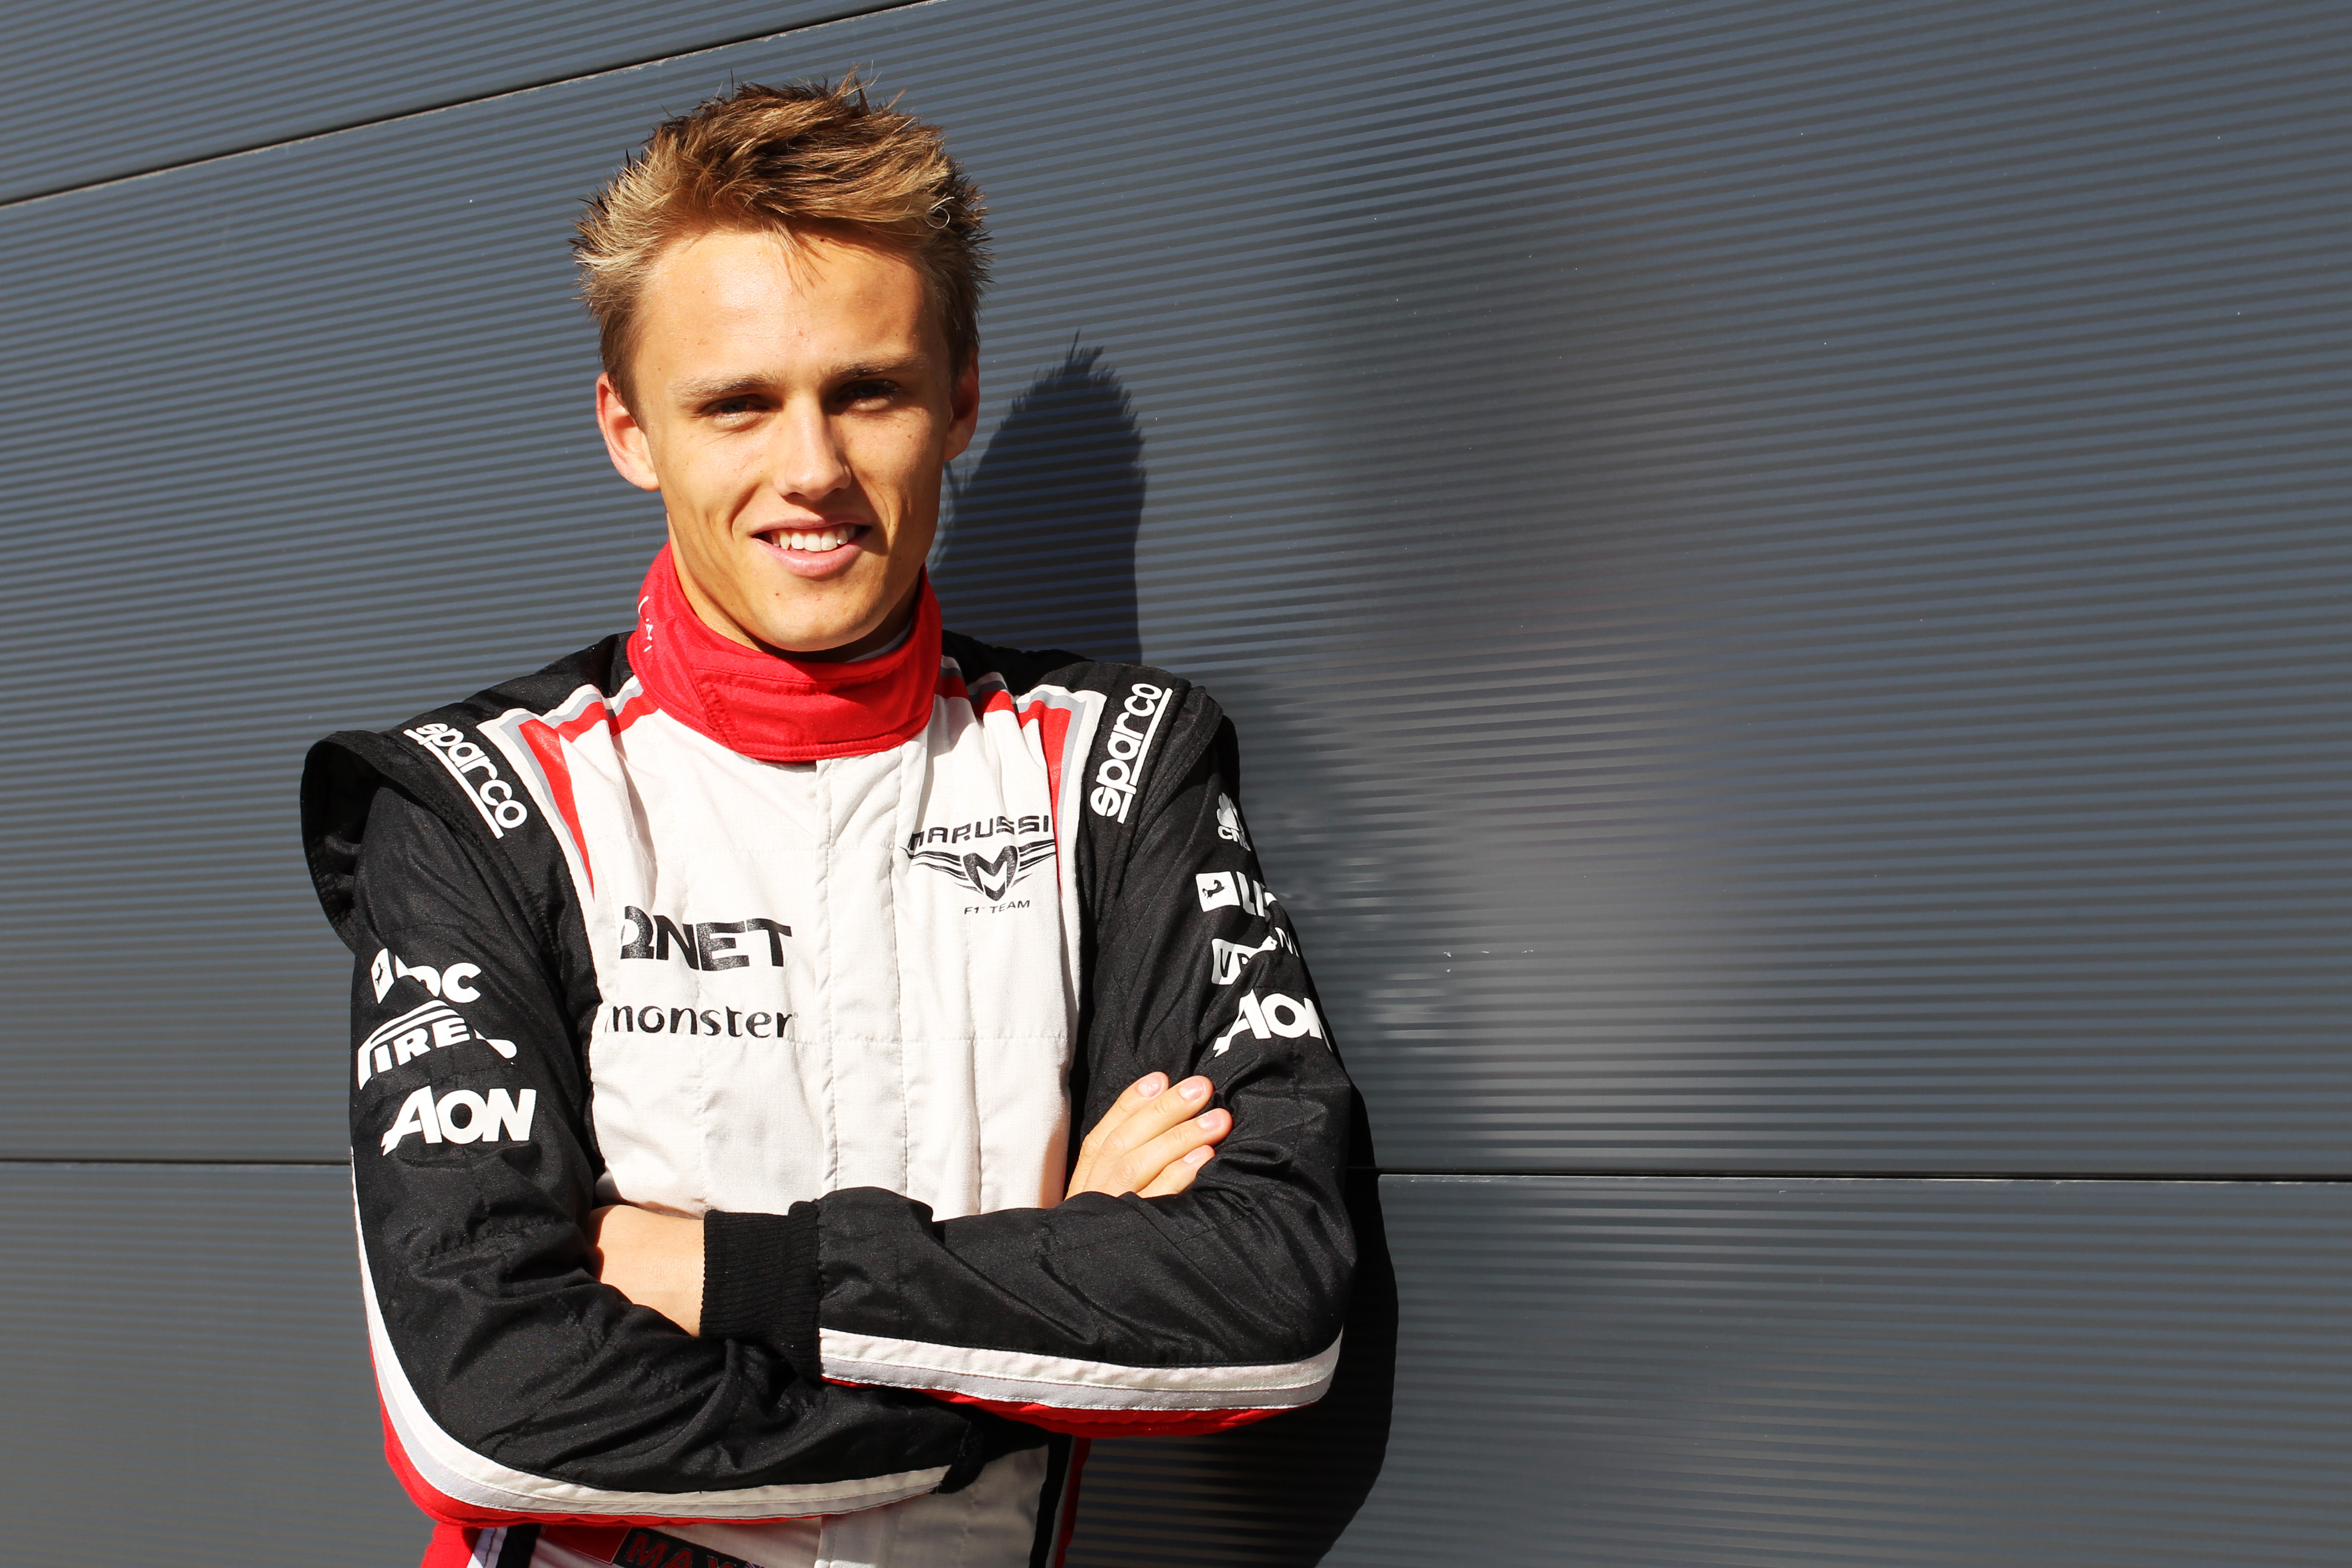 Officieel: Chilton rijdt in 2013 voor Marussia